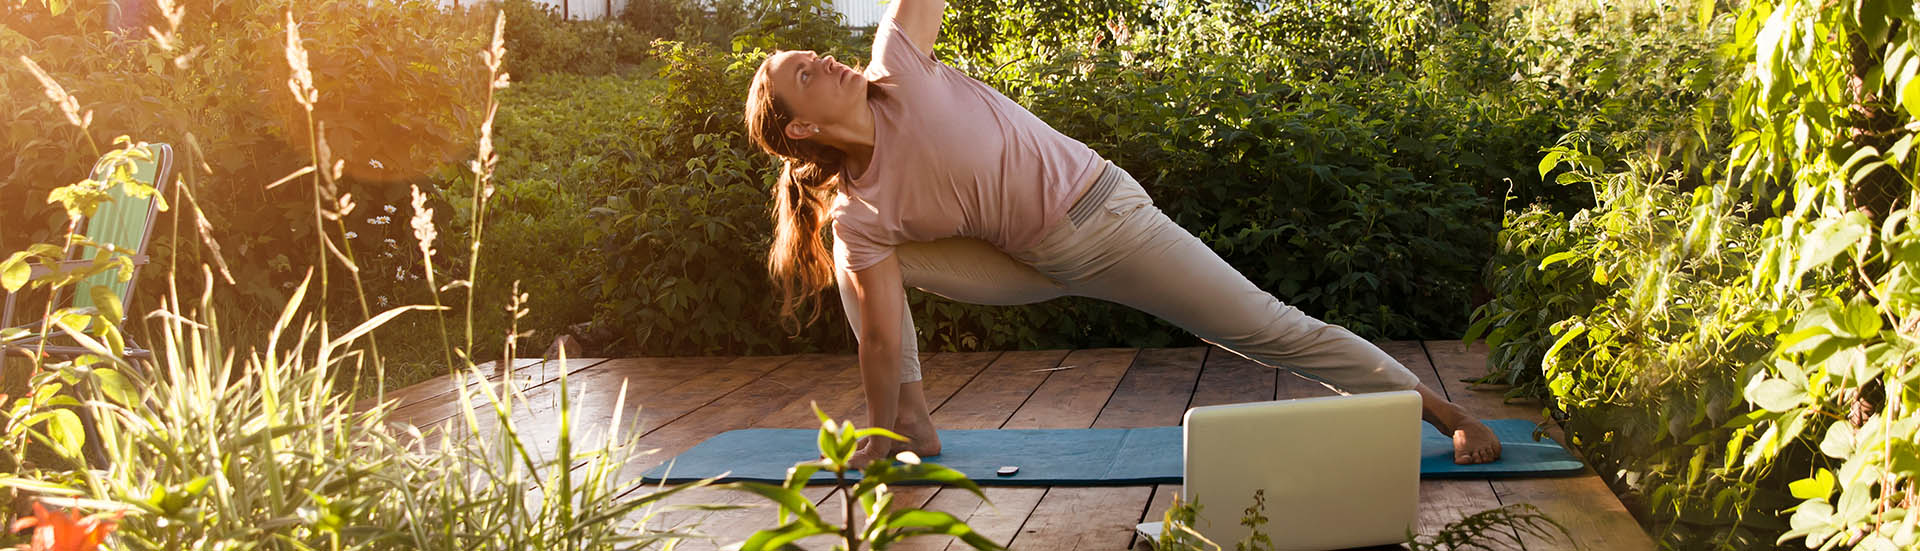 Frau macht im Garten Yoga